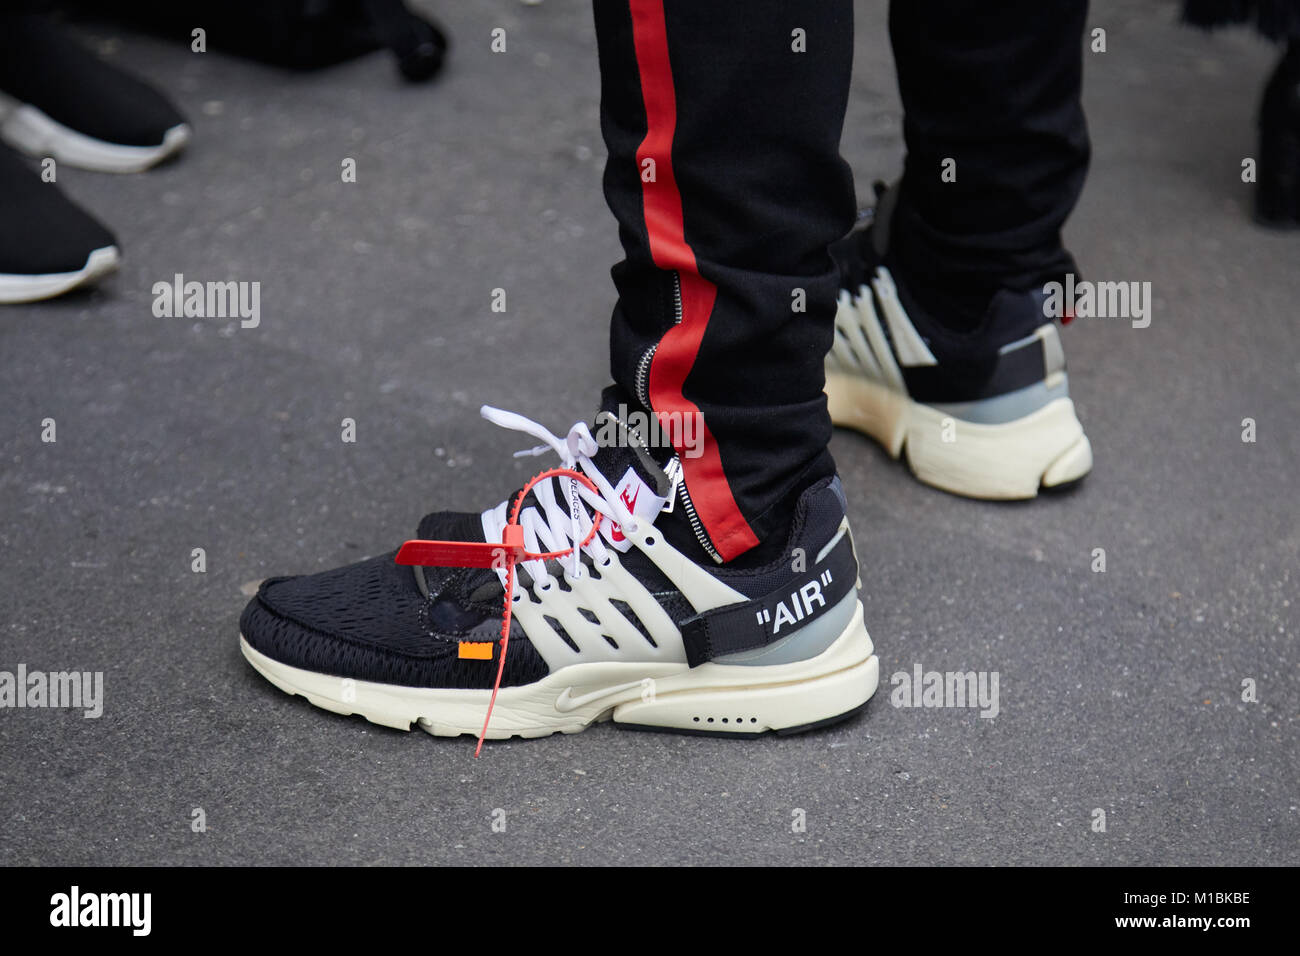 Milano - 15 gennaio: l uomo con il bianco e nero Nike Air scarpe e  pantaloni neri